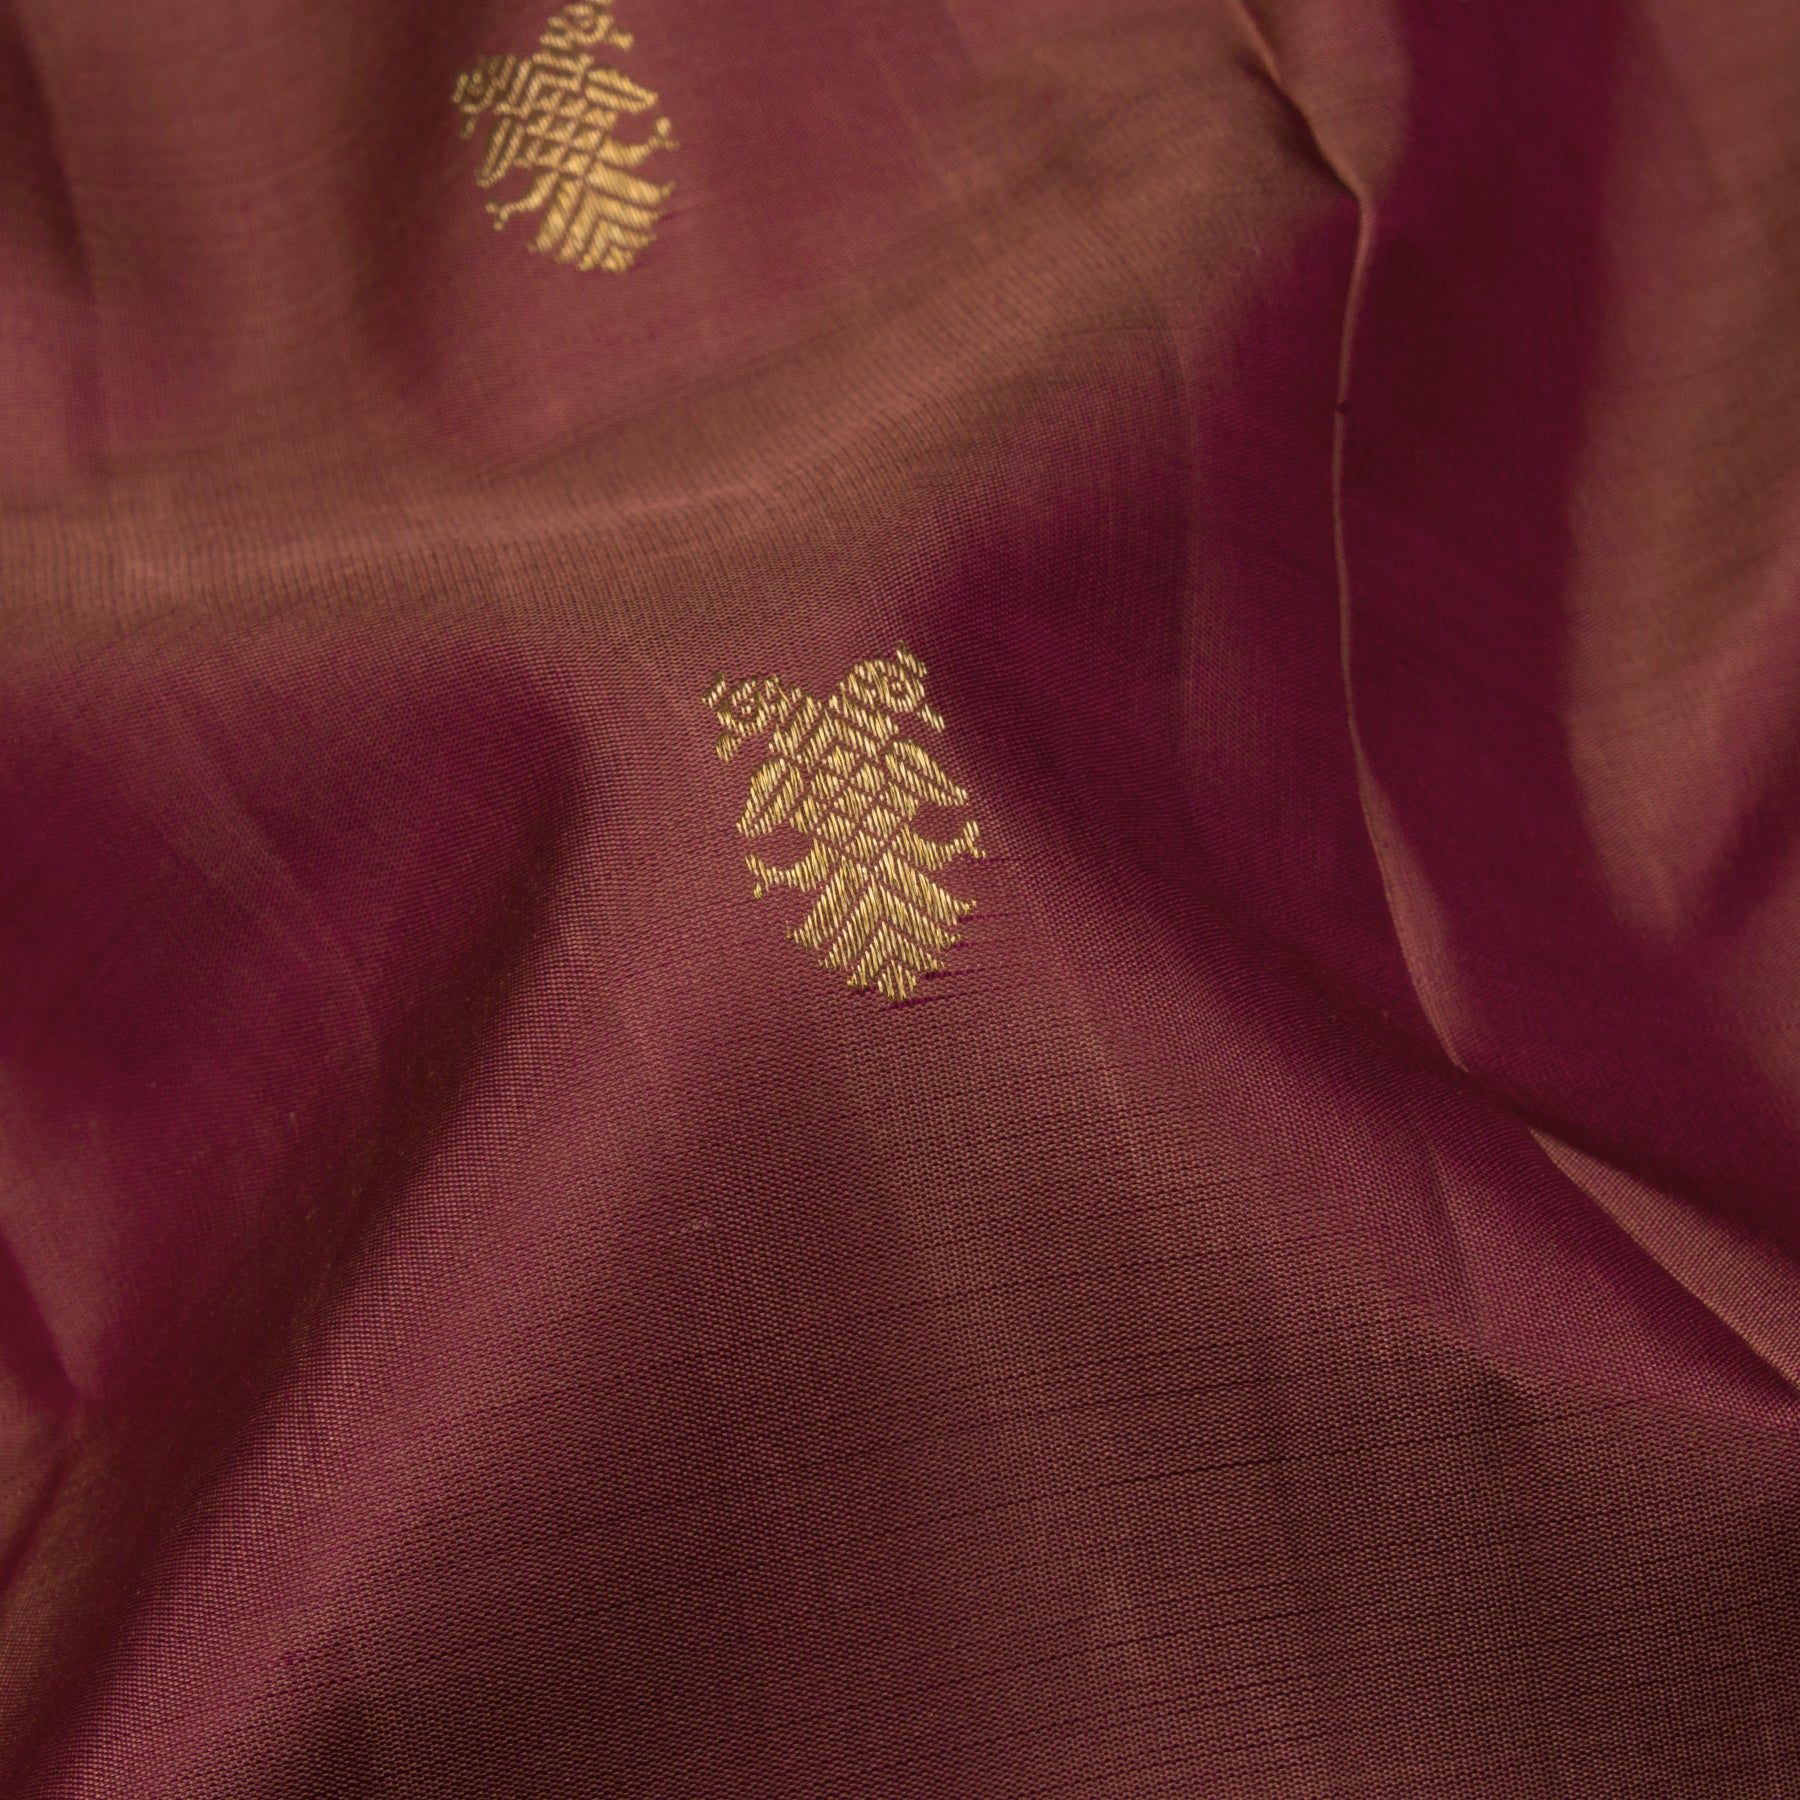 Kanakavalli Kanjivaram Silk Sari 23-595-HS001-08048 - Fabric View